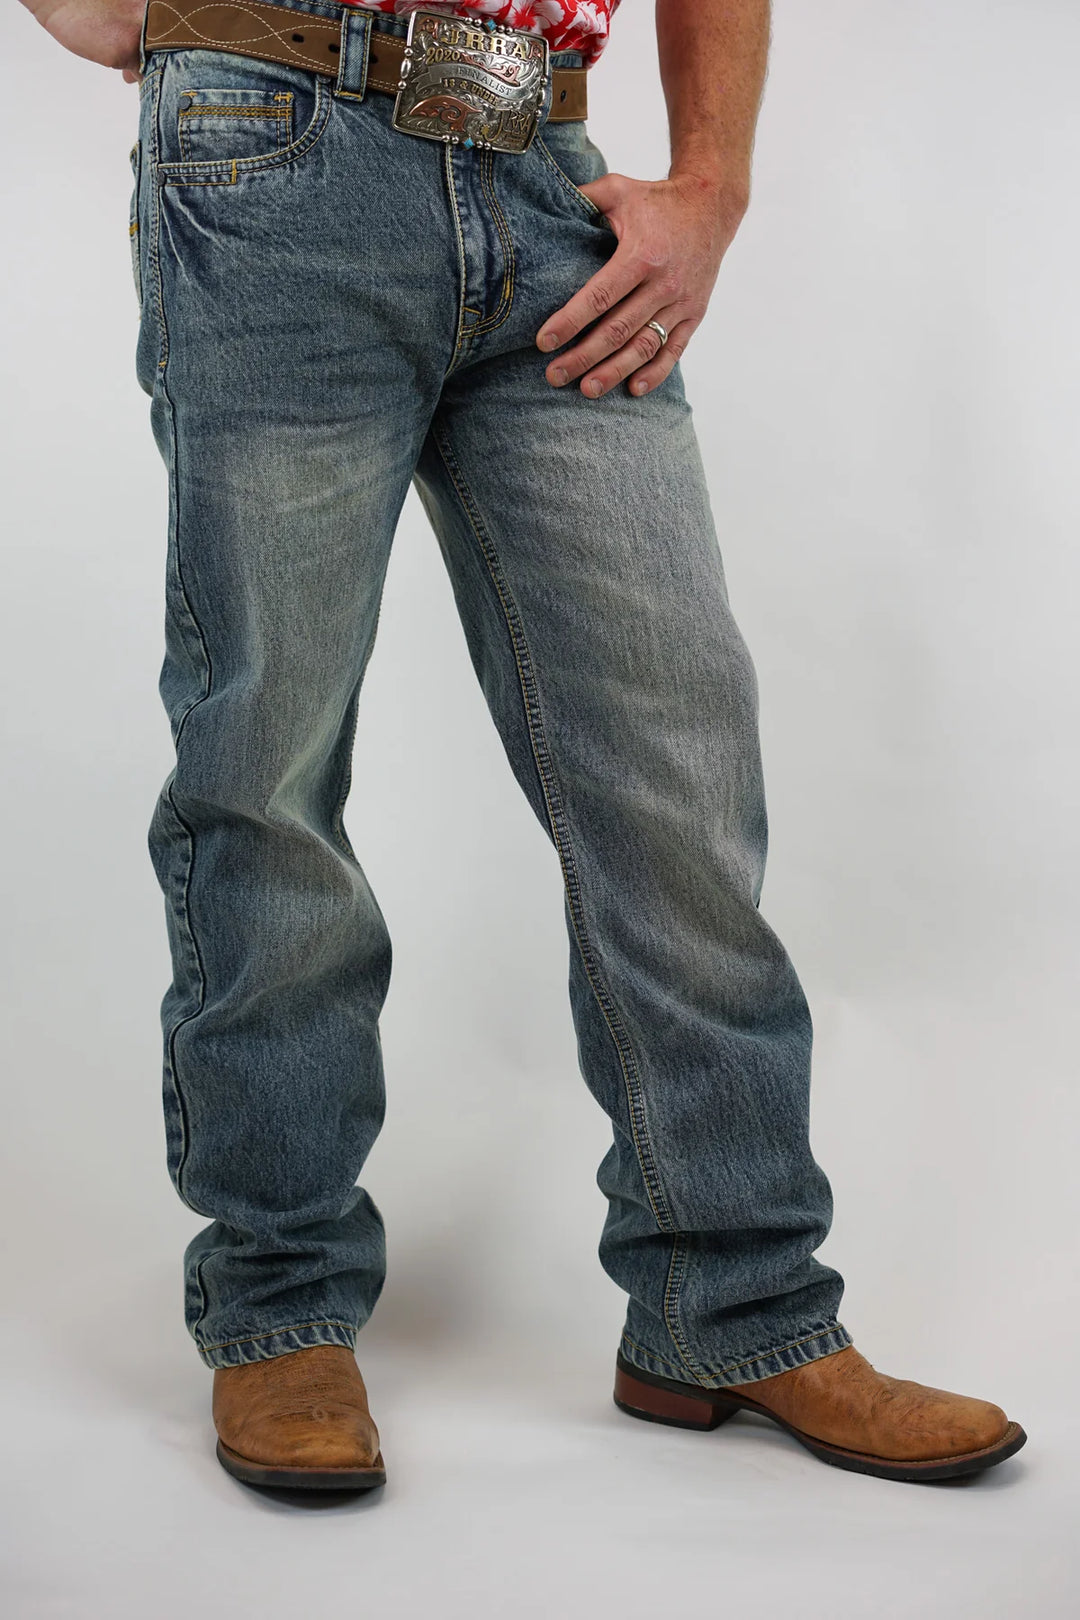 Drover Denim Jeans, Medium Wash